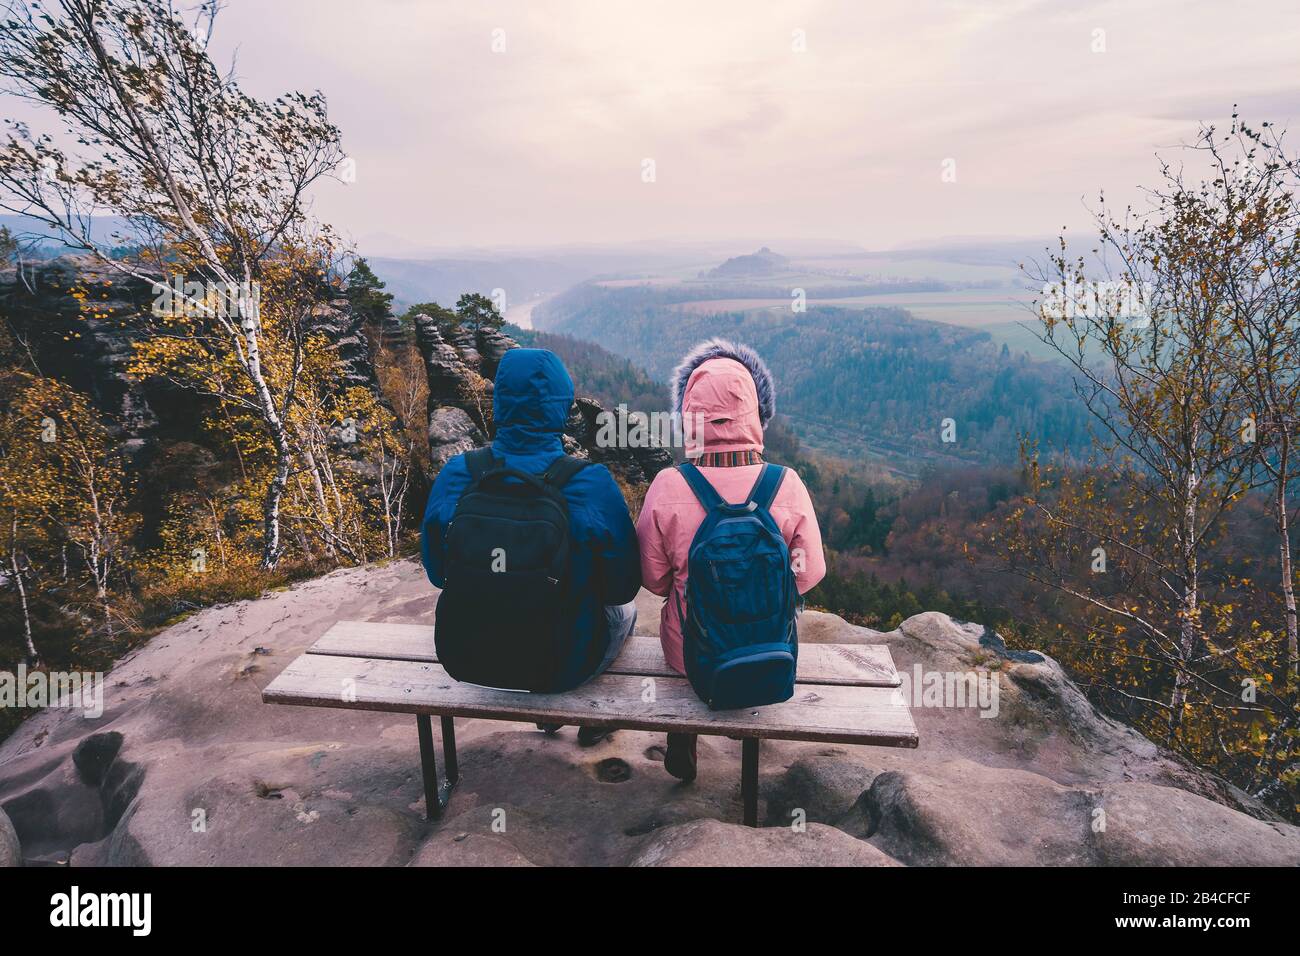 Junges Paar in winterlicher Kleidung mit Rucksäcken, die nach Wanderung auf einem Kalksteinfelsen sitzend die Ansicht der Landschaft genießt, Reise-Li Stock Photo